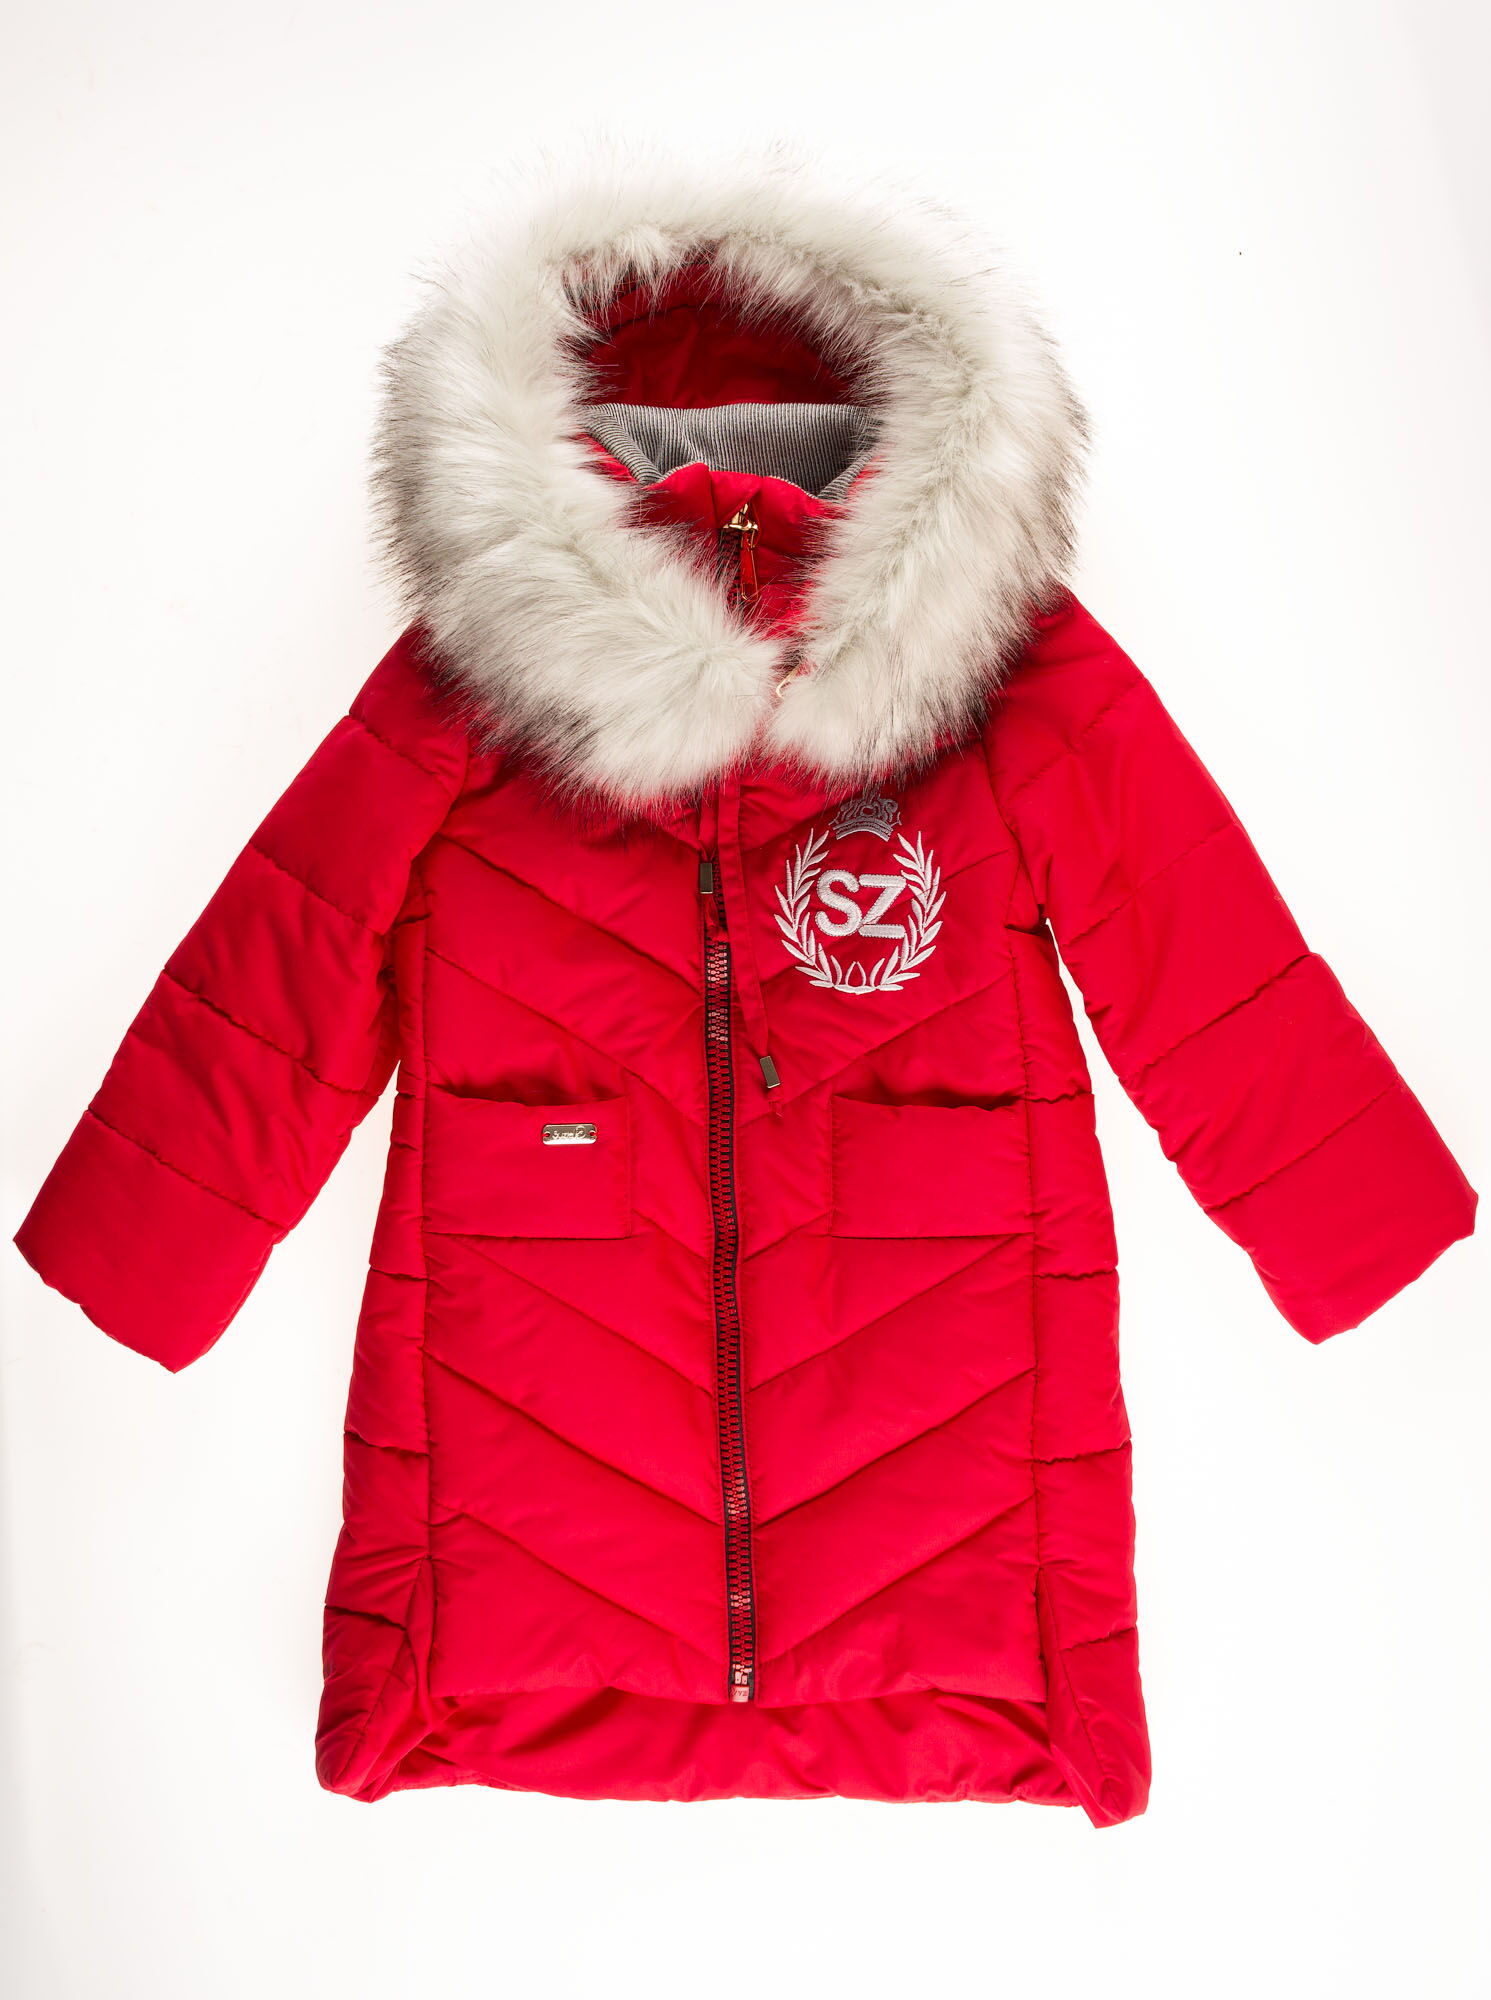 Куртка-пальто зимняя для девочки SUZIE Беренис красная ПТ-36711  - купить